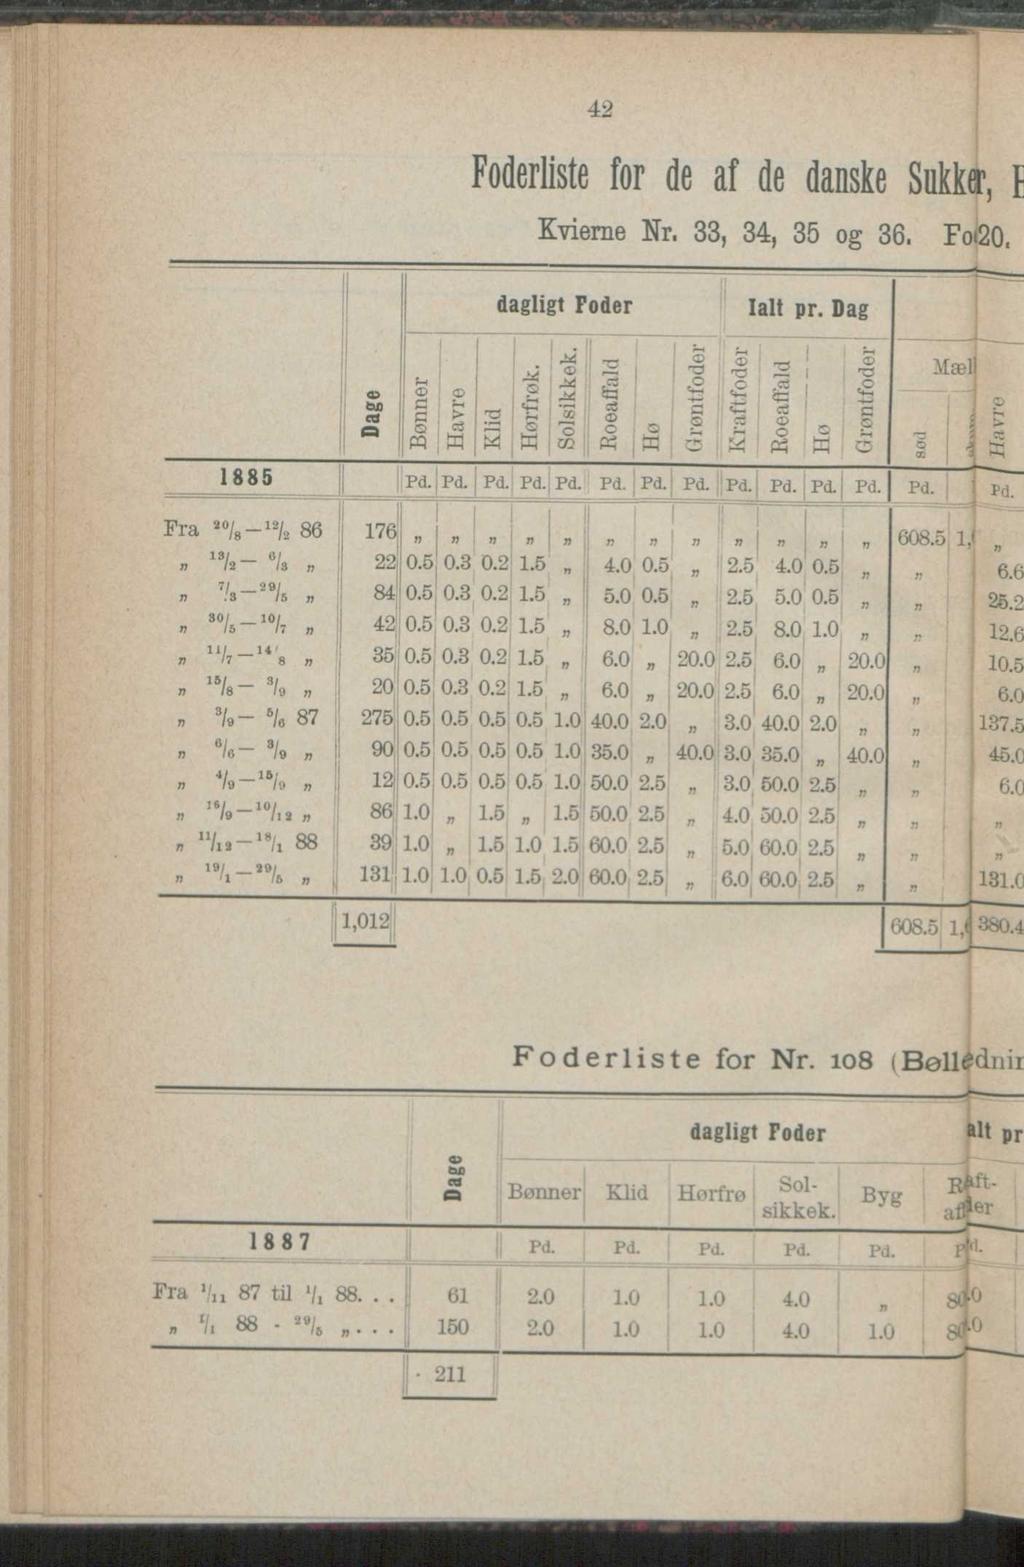 5S5W m a s s s, Foderliste for de af de danske Sukker, Kvierne Nr. 33, 34, 35 og 36. Fo 20 dagligt Foder Ialt pr. Dag 1885 F ra ao/8-12/2 86, 18/a- 6/». 7/ 29/ n.